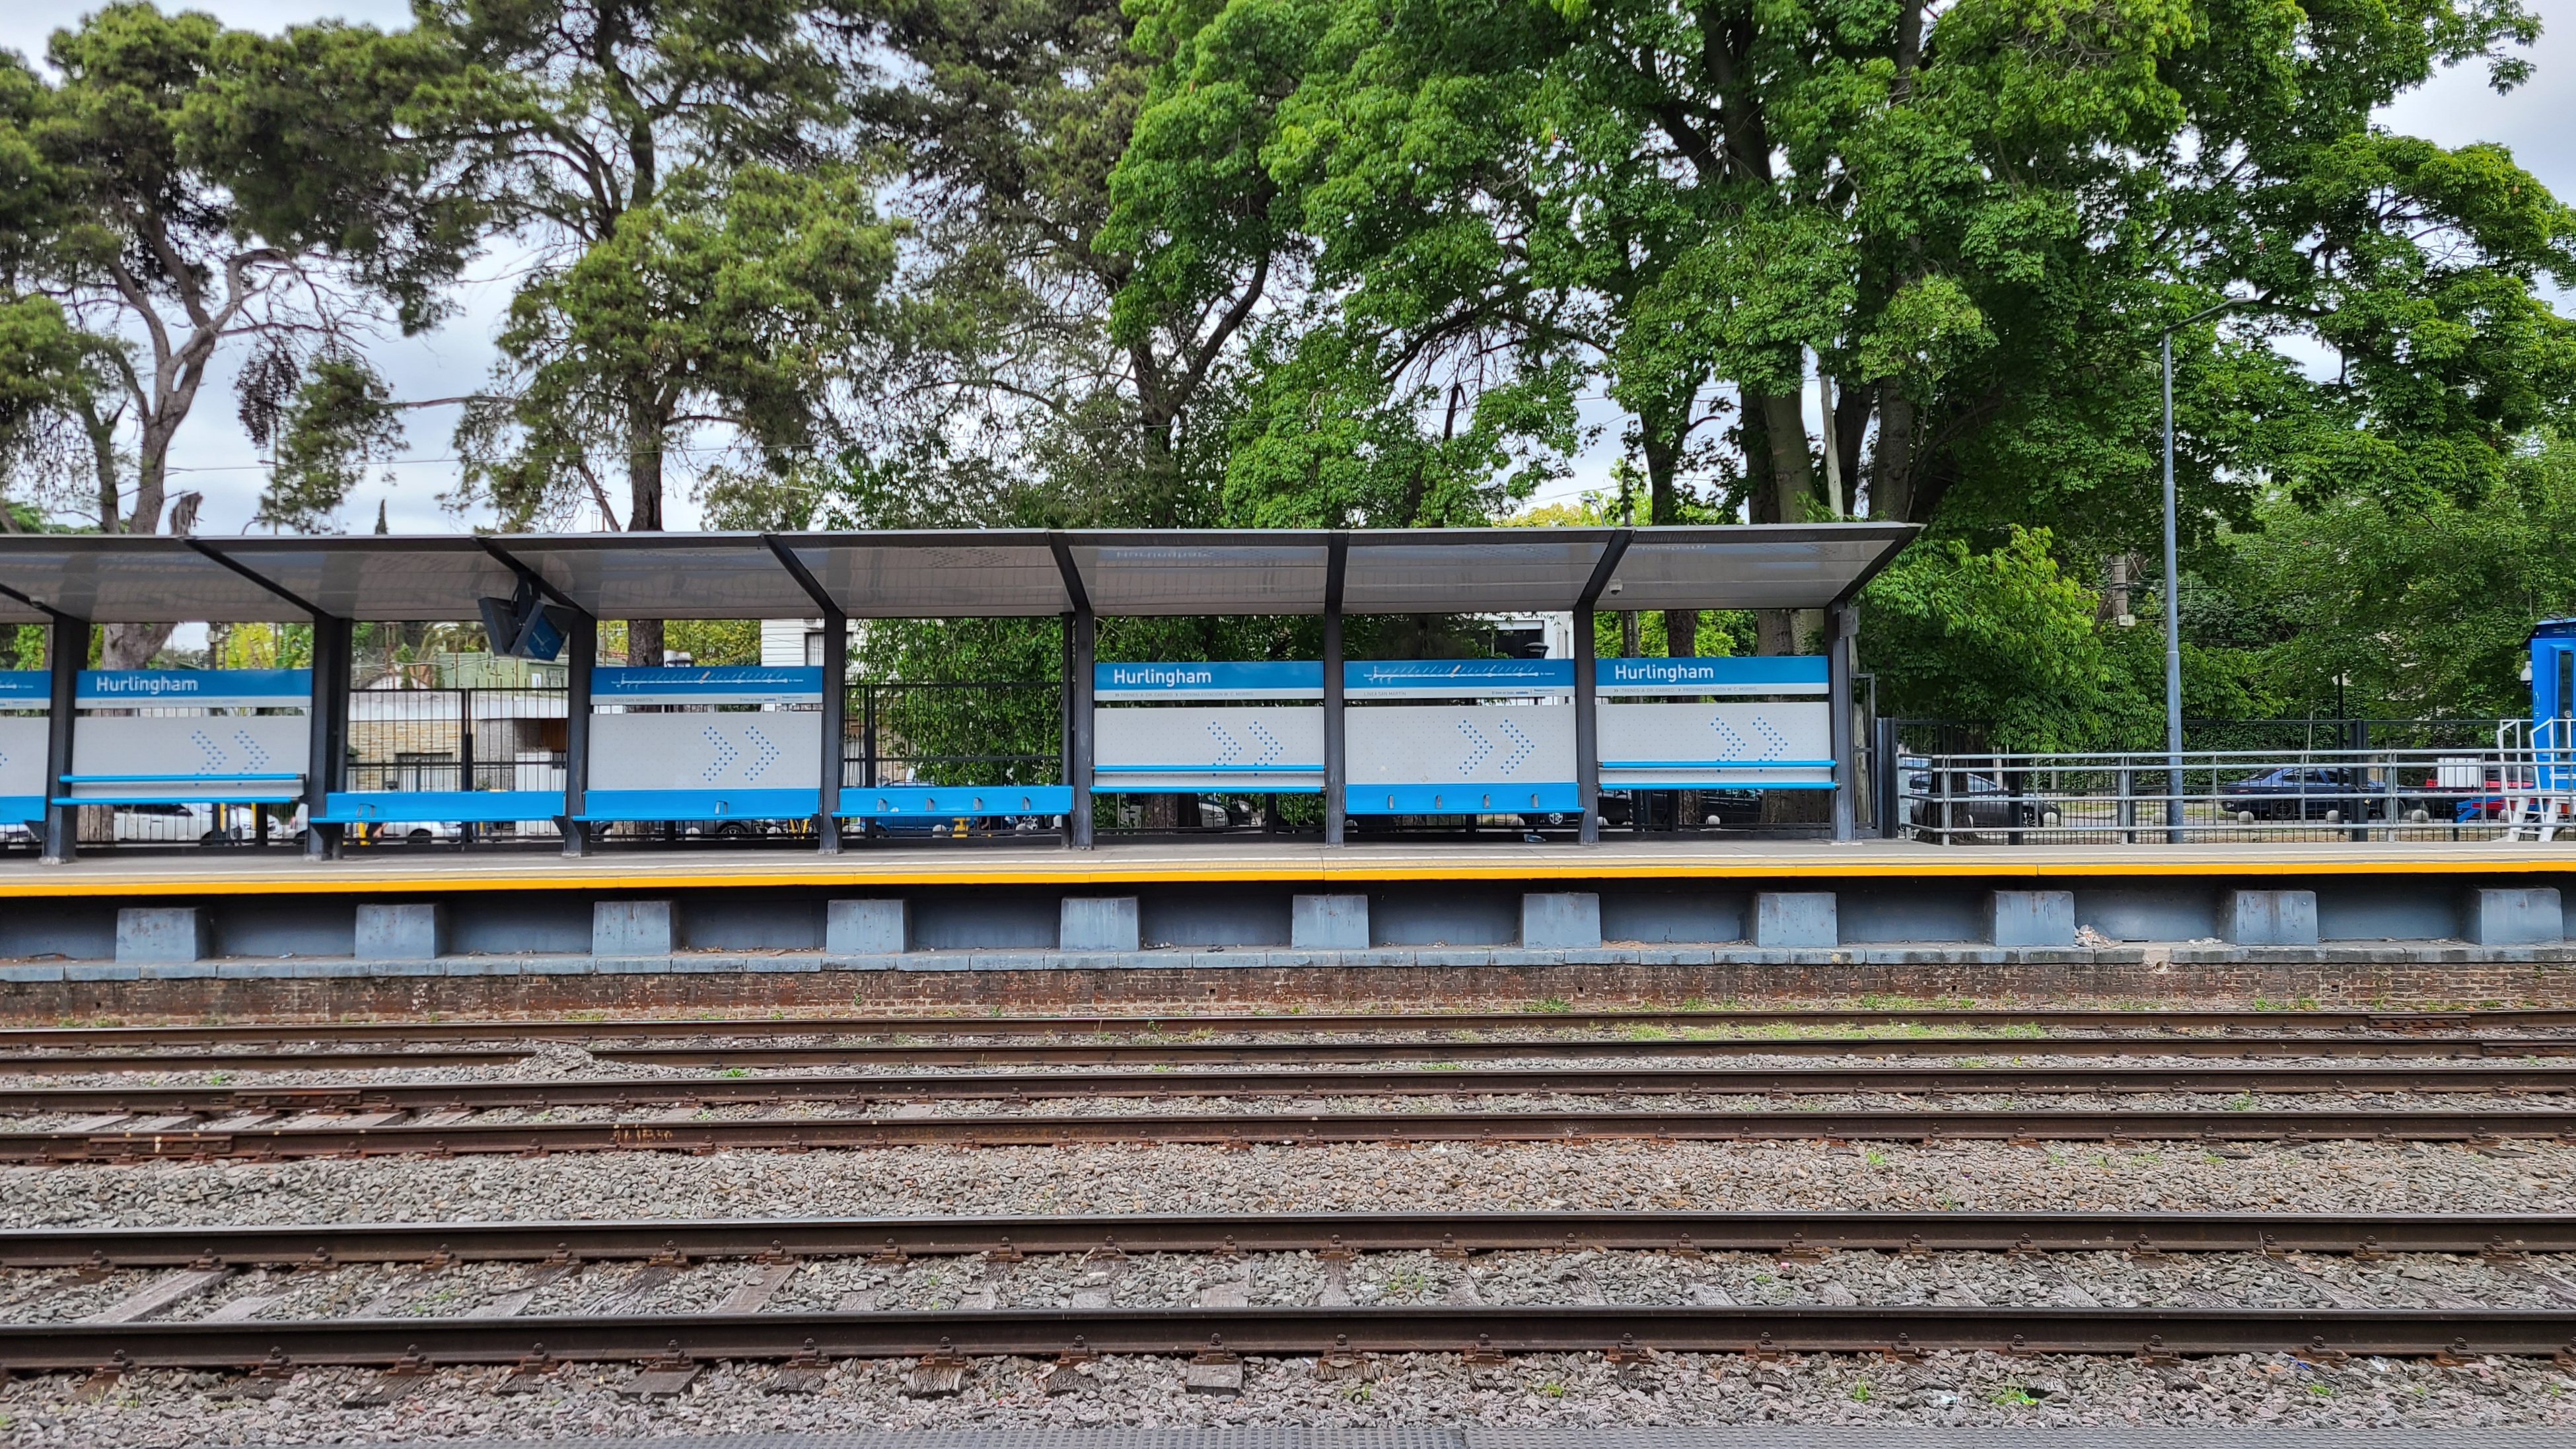 부에노스아이레스 기차 Hulingham